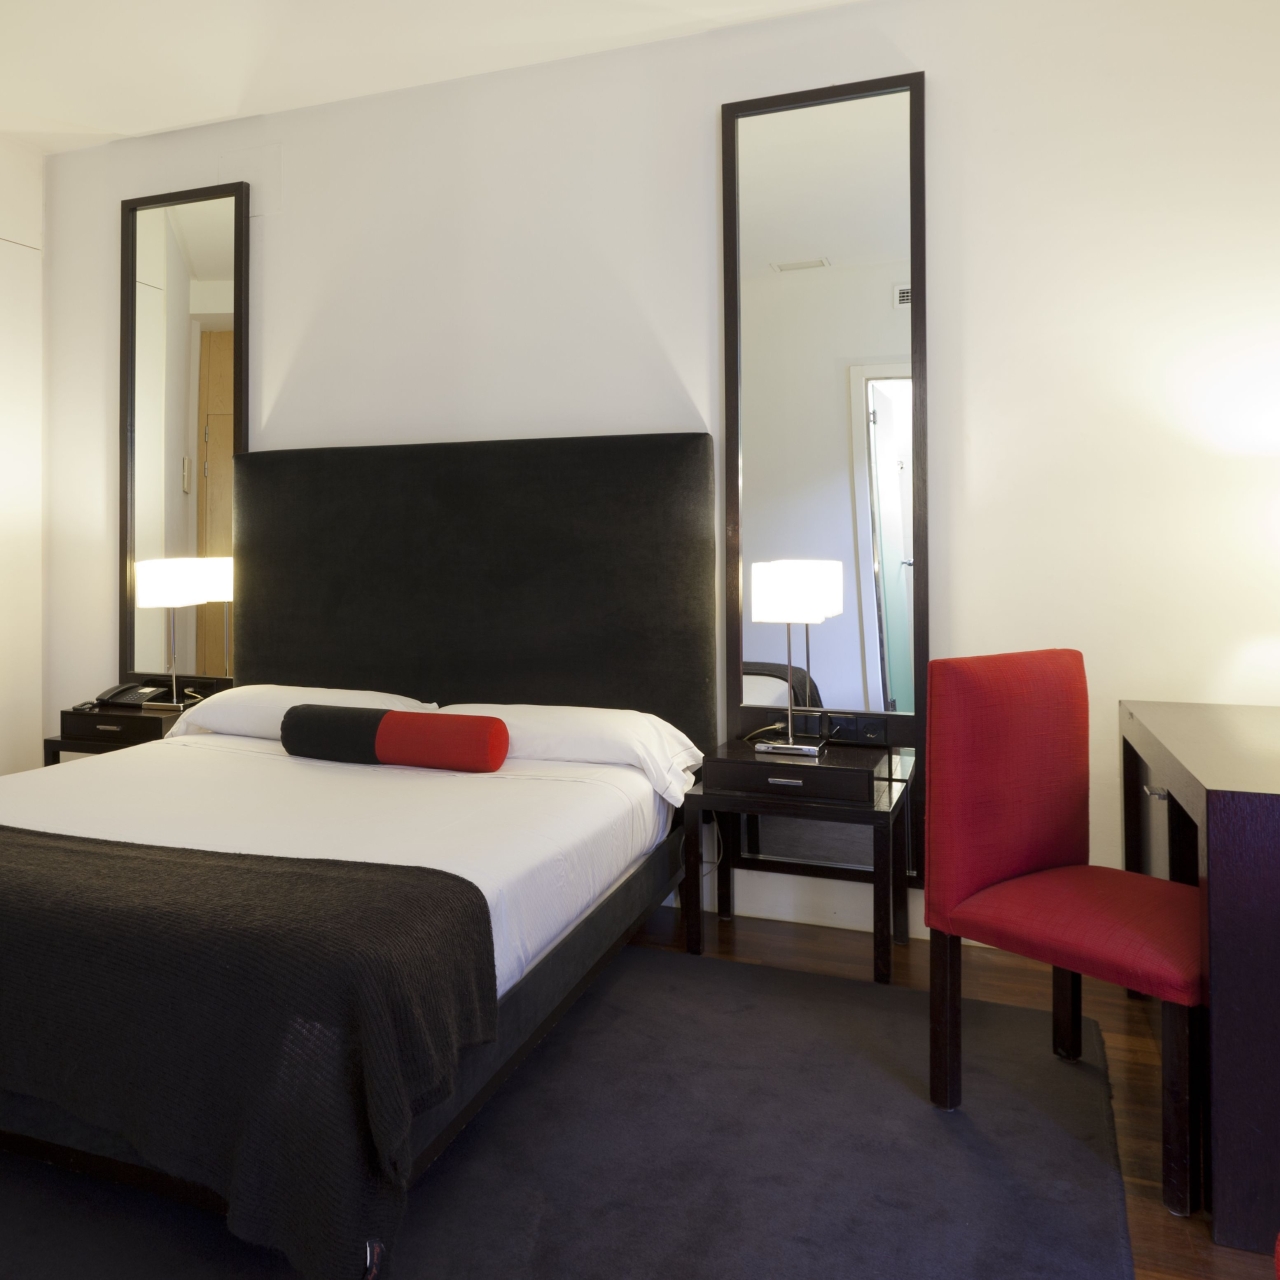 Hotel Quatro Puerta del Sol en Madrid en HRS con servicios gratuitos